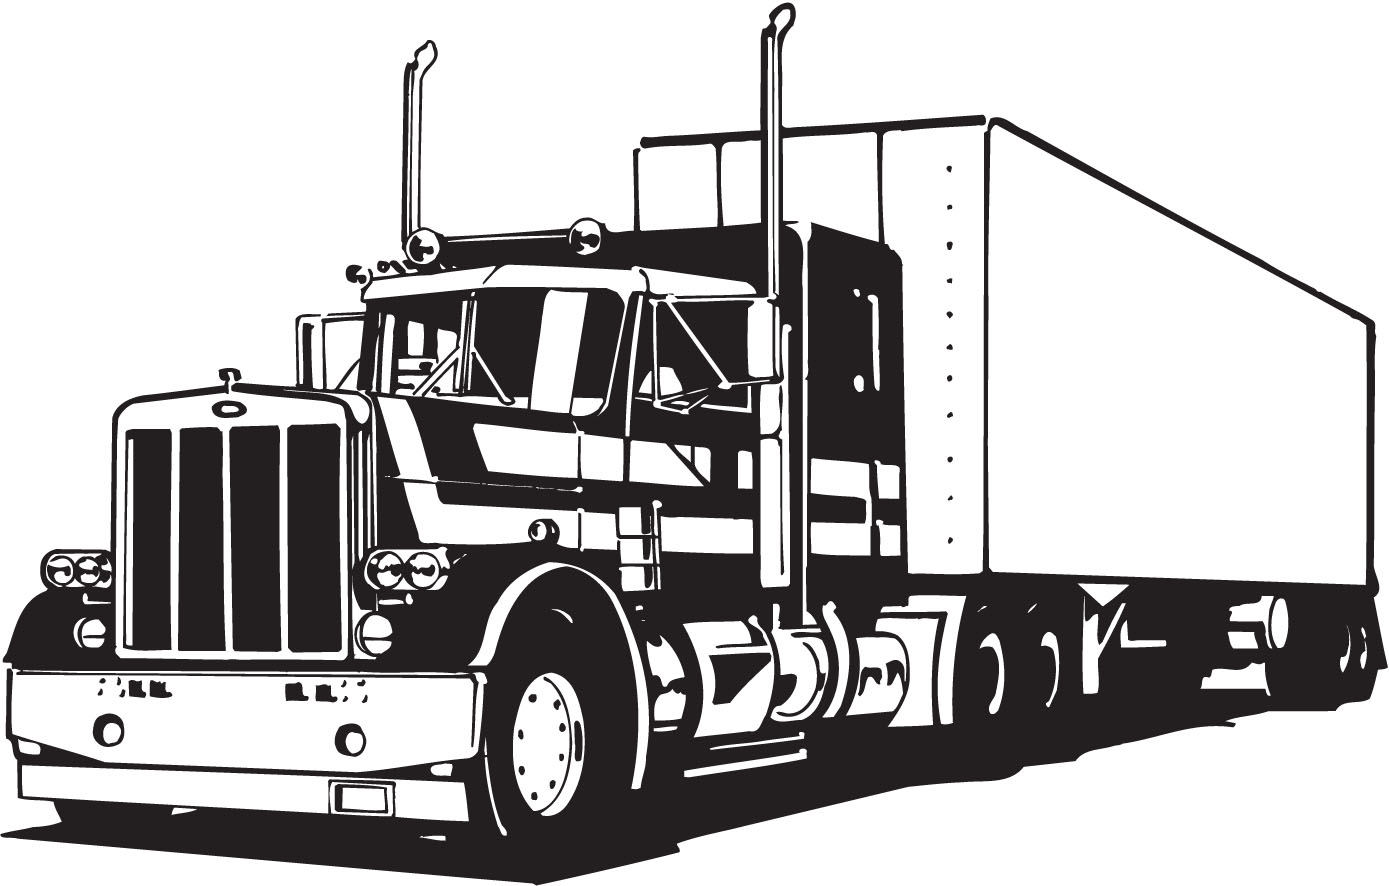  Truck  Clipart Free Images  at Clker com vector clip art  